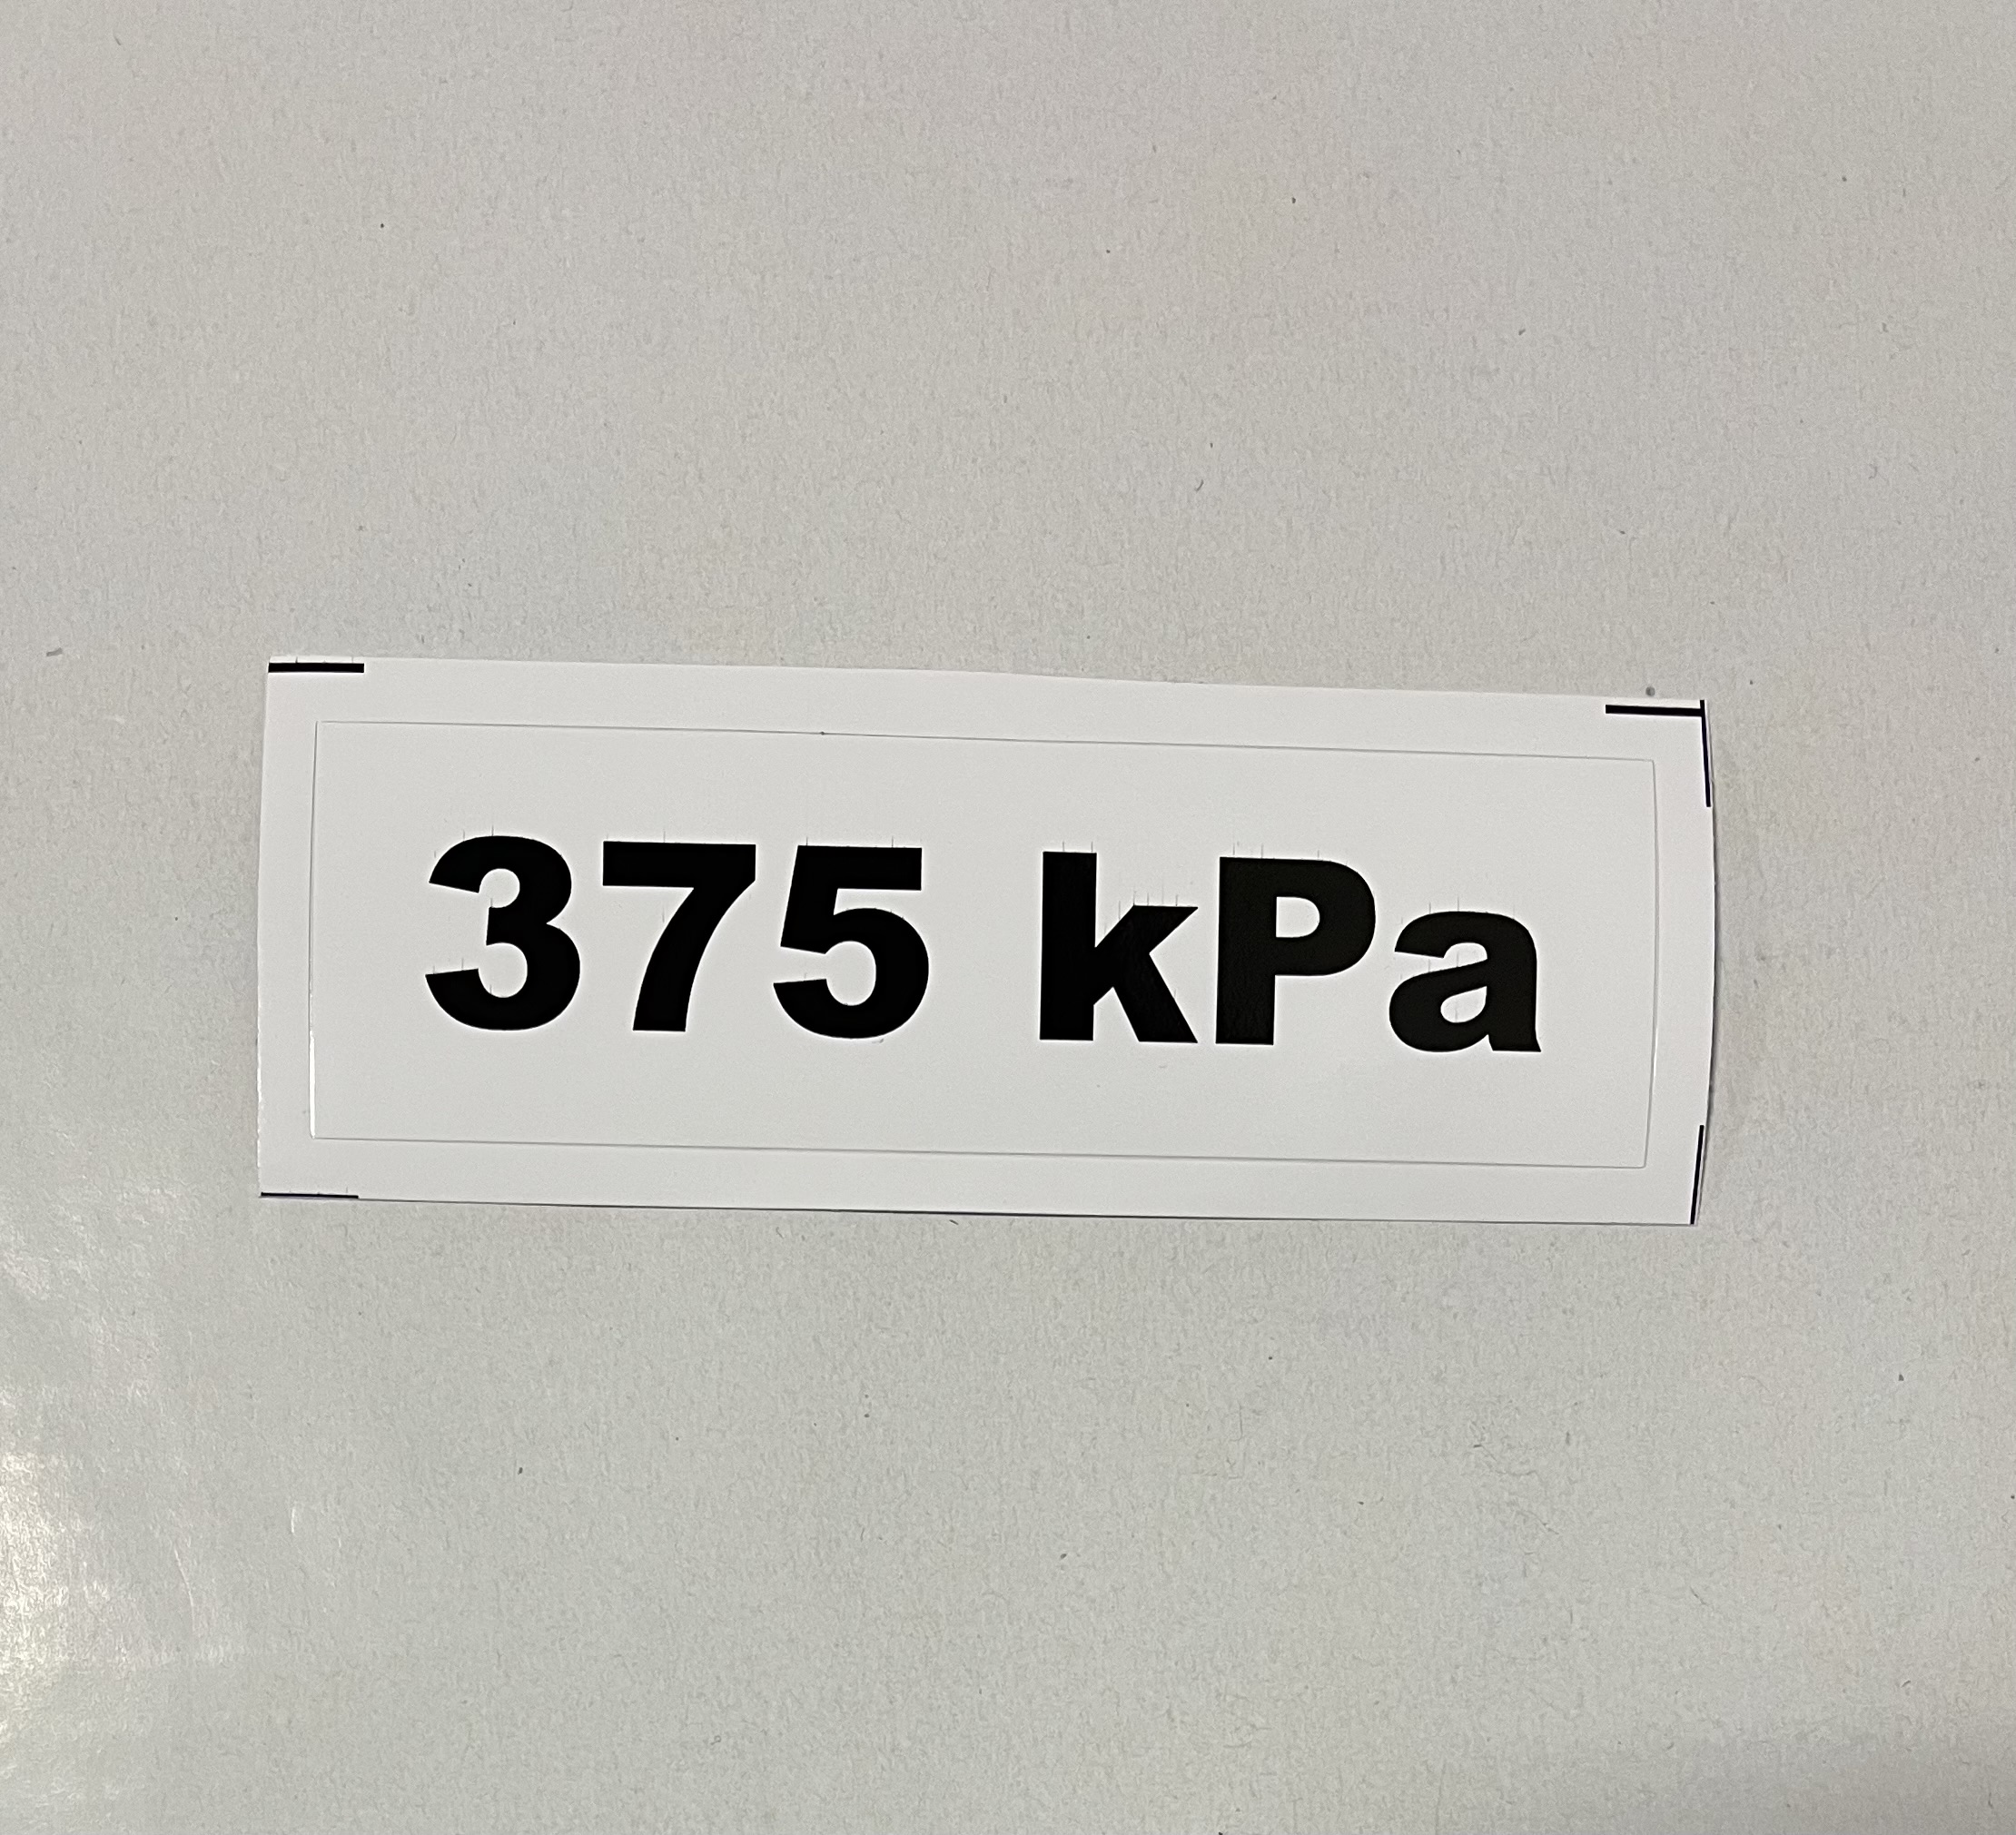 Označenie kPa 375